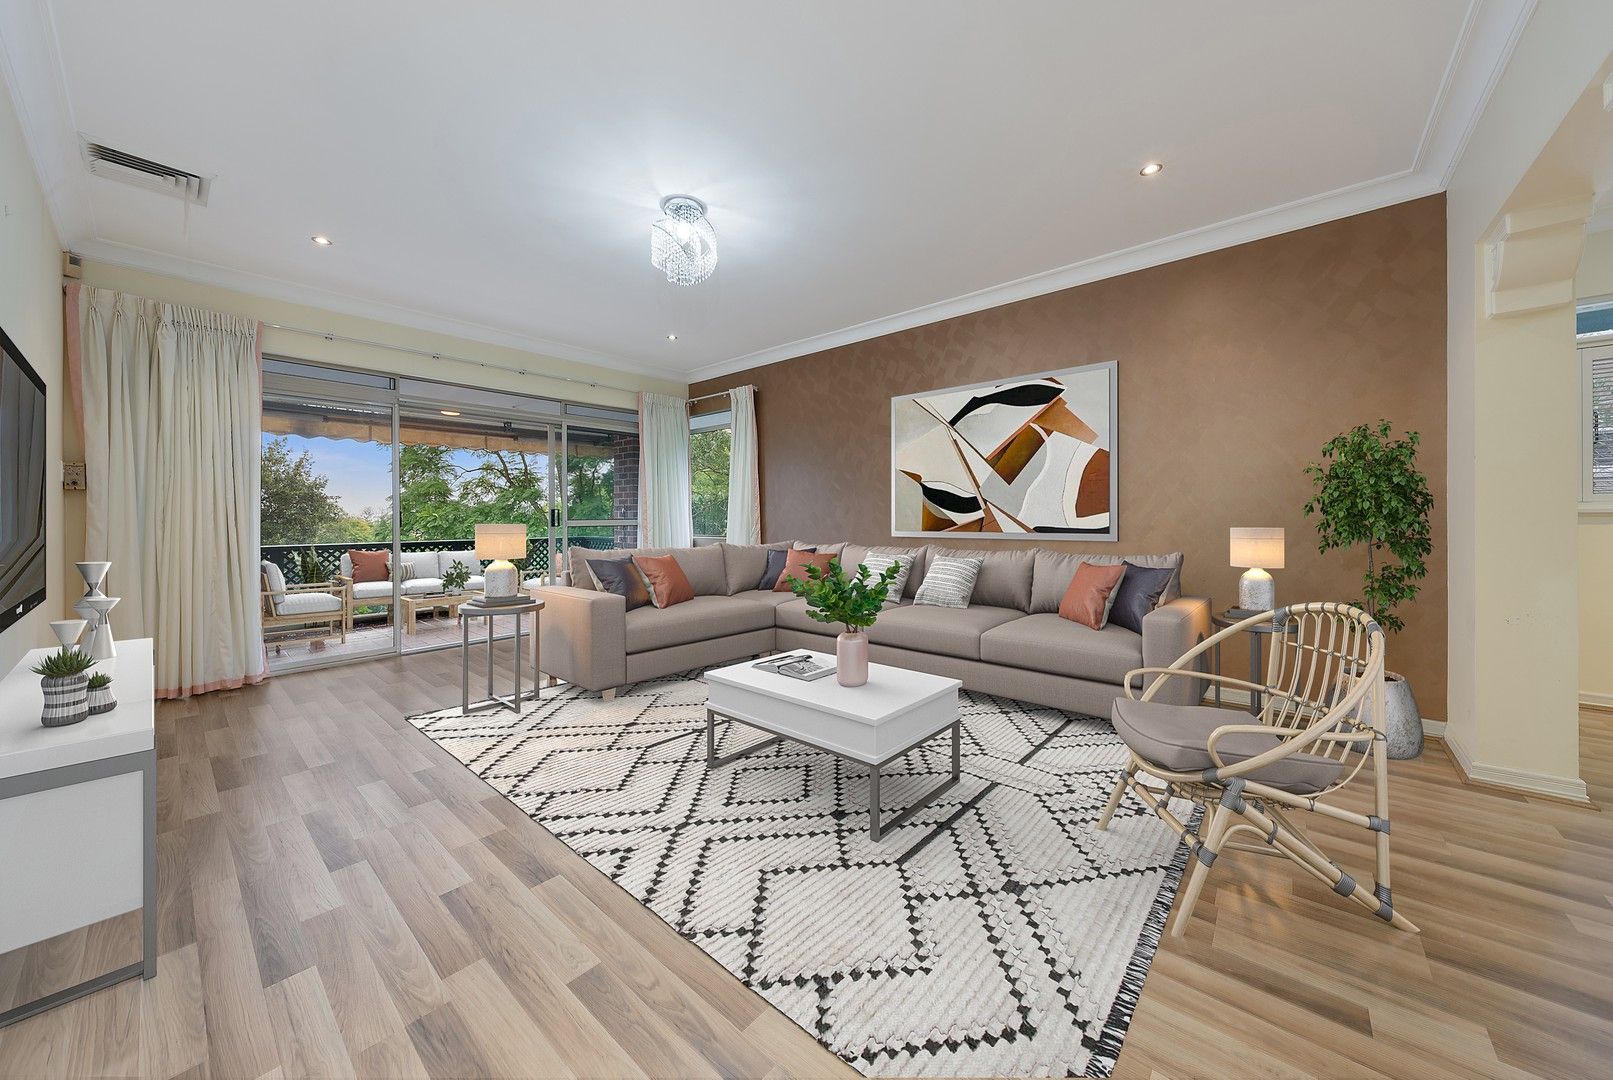 3 bedrooms Apartment / Unit / Flat in 27/20 Cecil Street KILLARA NSW, 2071